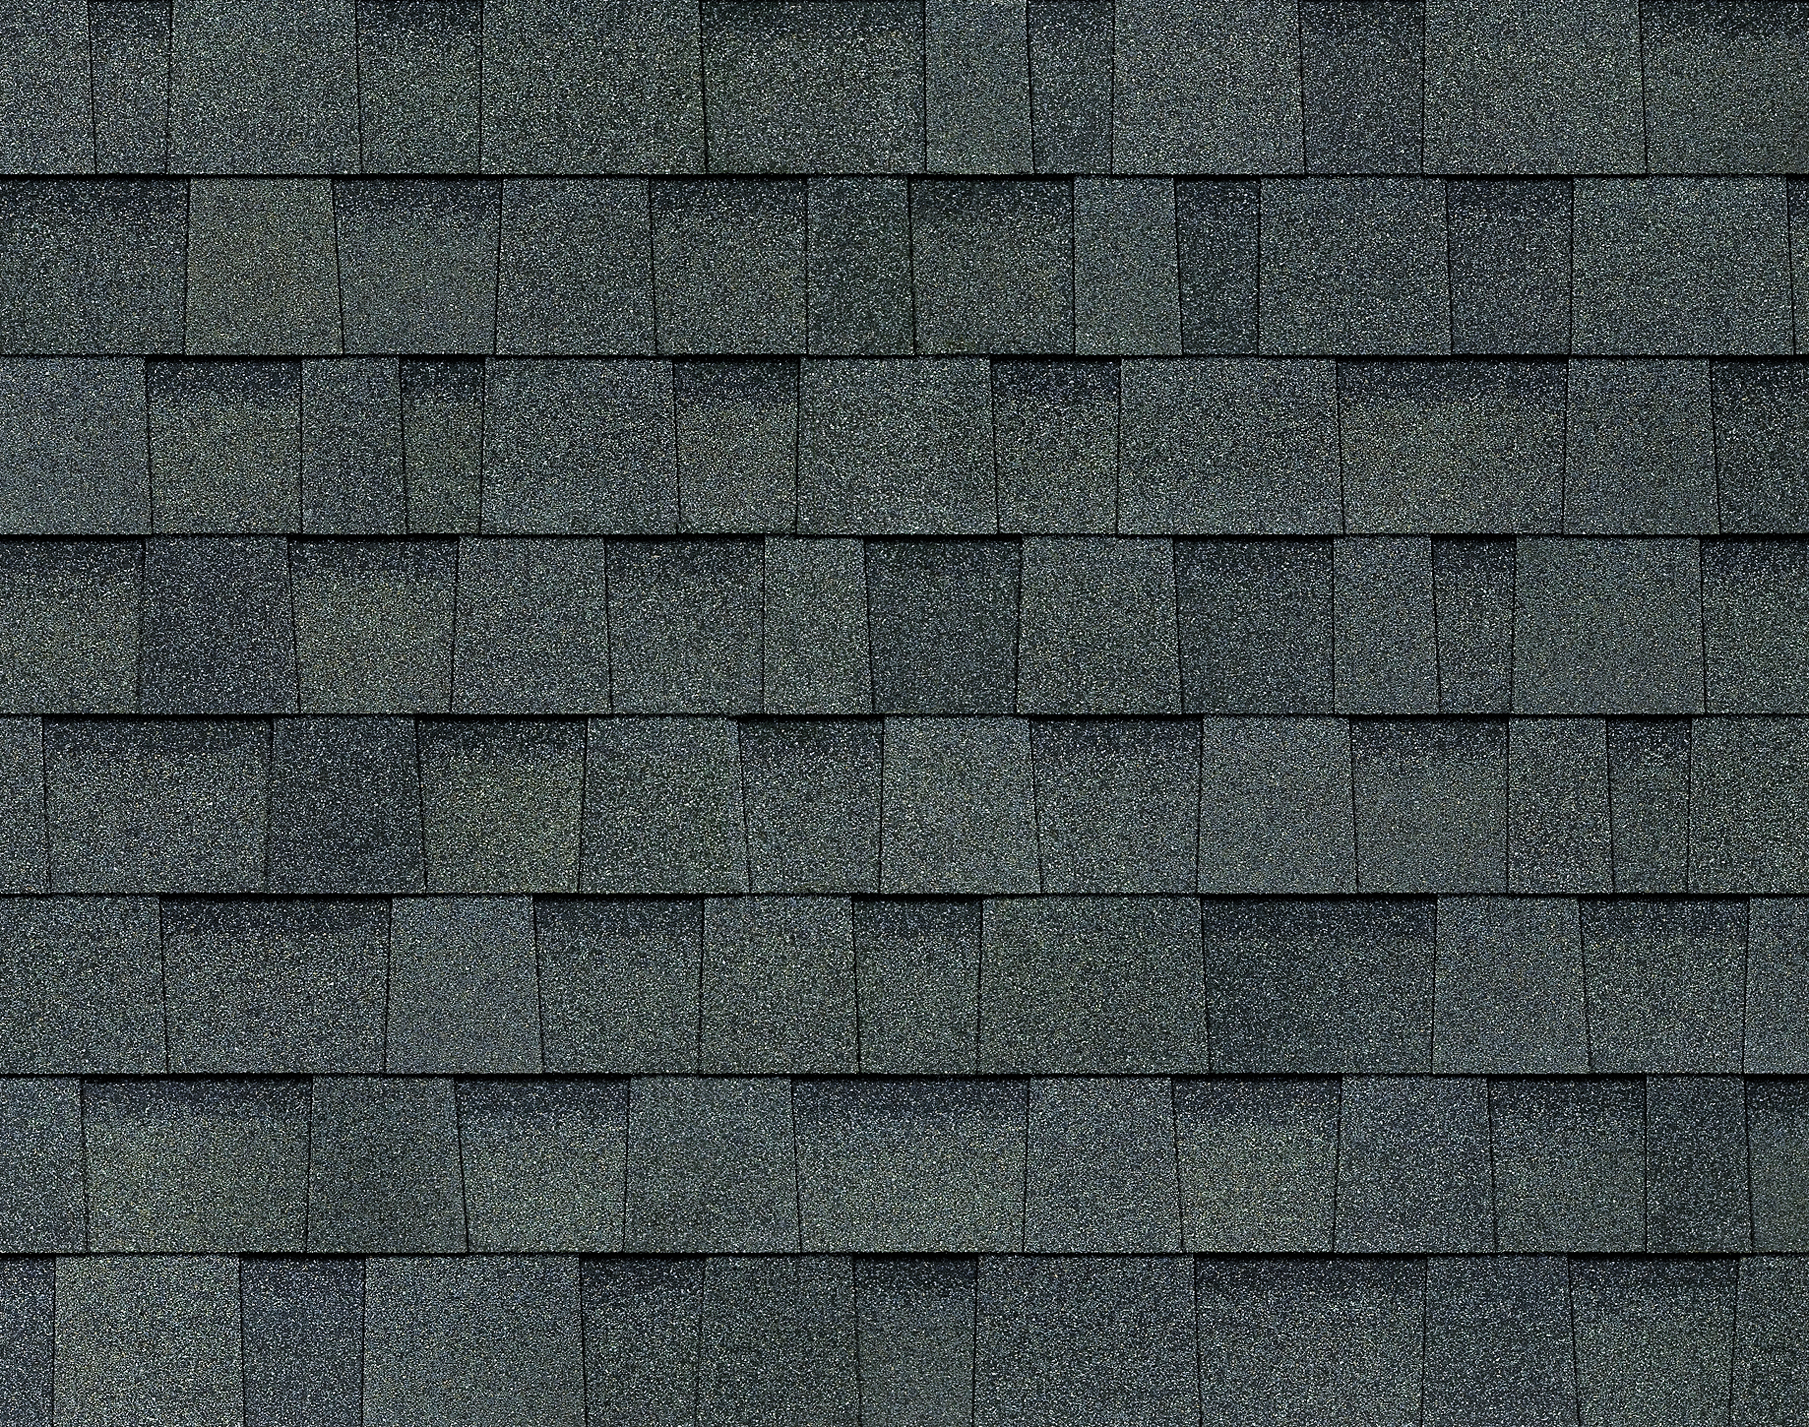 wilimsburg-gray-roof-shingle-owens-corning-oakridge